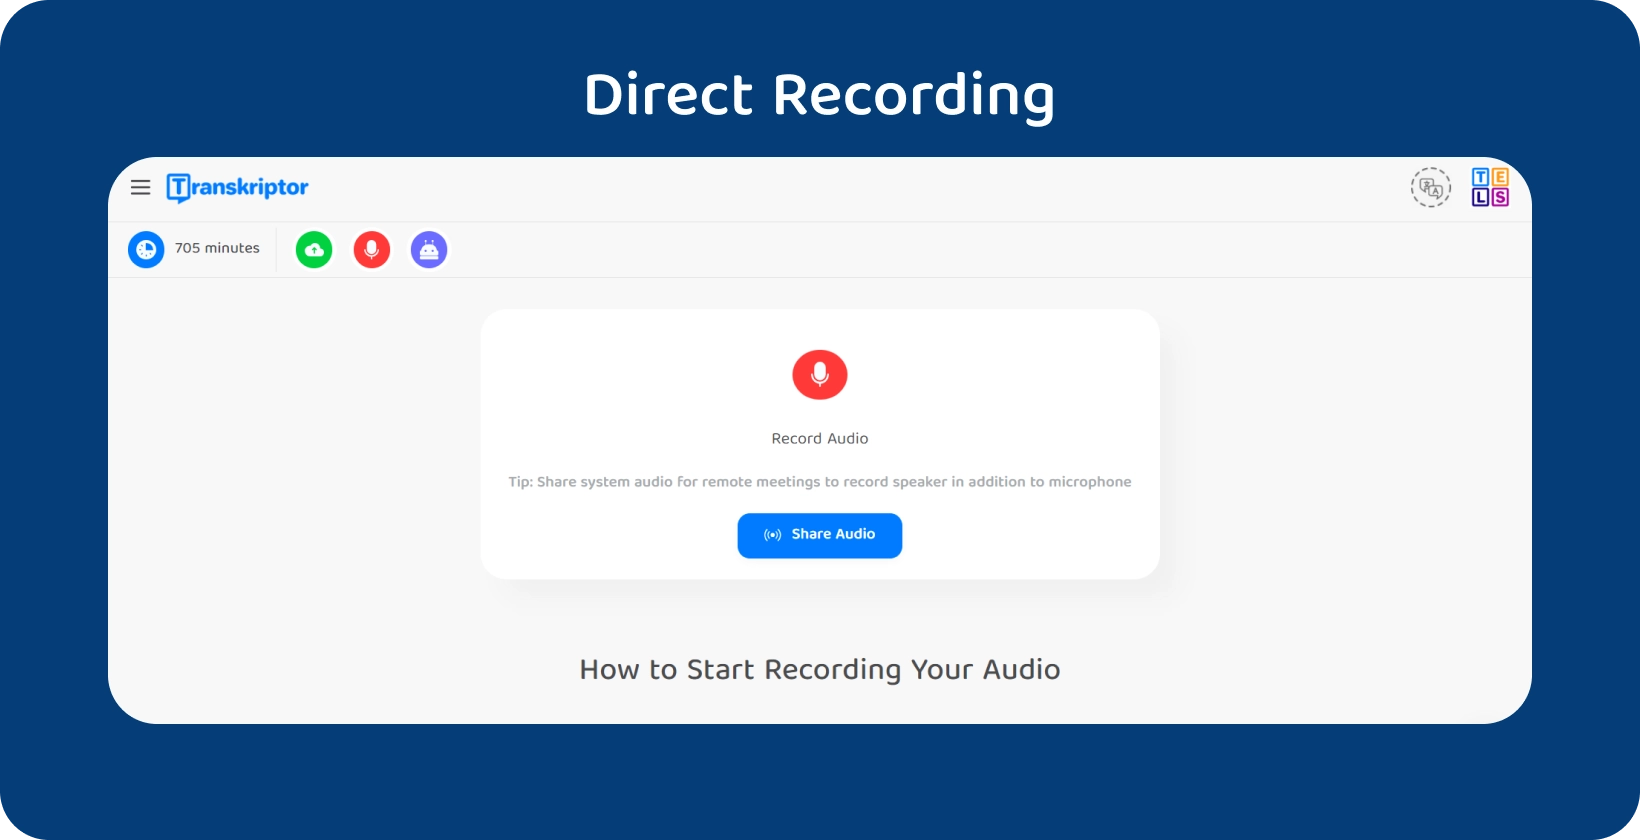 Fitur direct audio recording di Transkriptor untuk wawancara penelitian kualitatif, dengan kapasitas 705 menit.